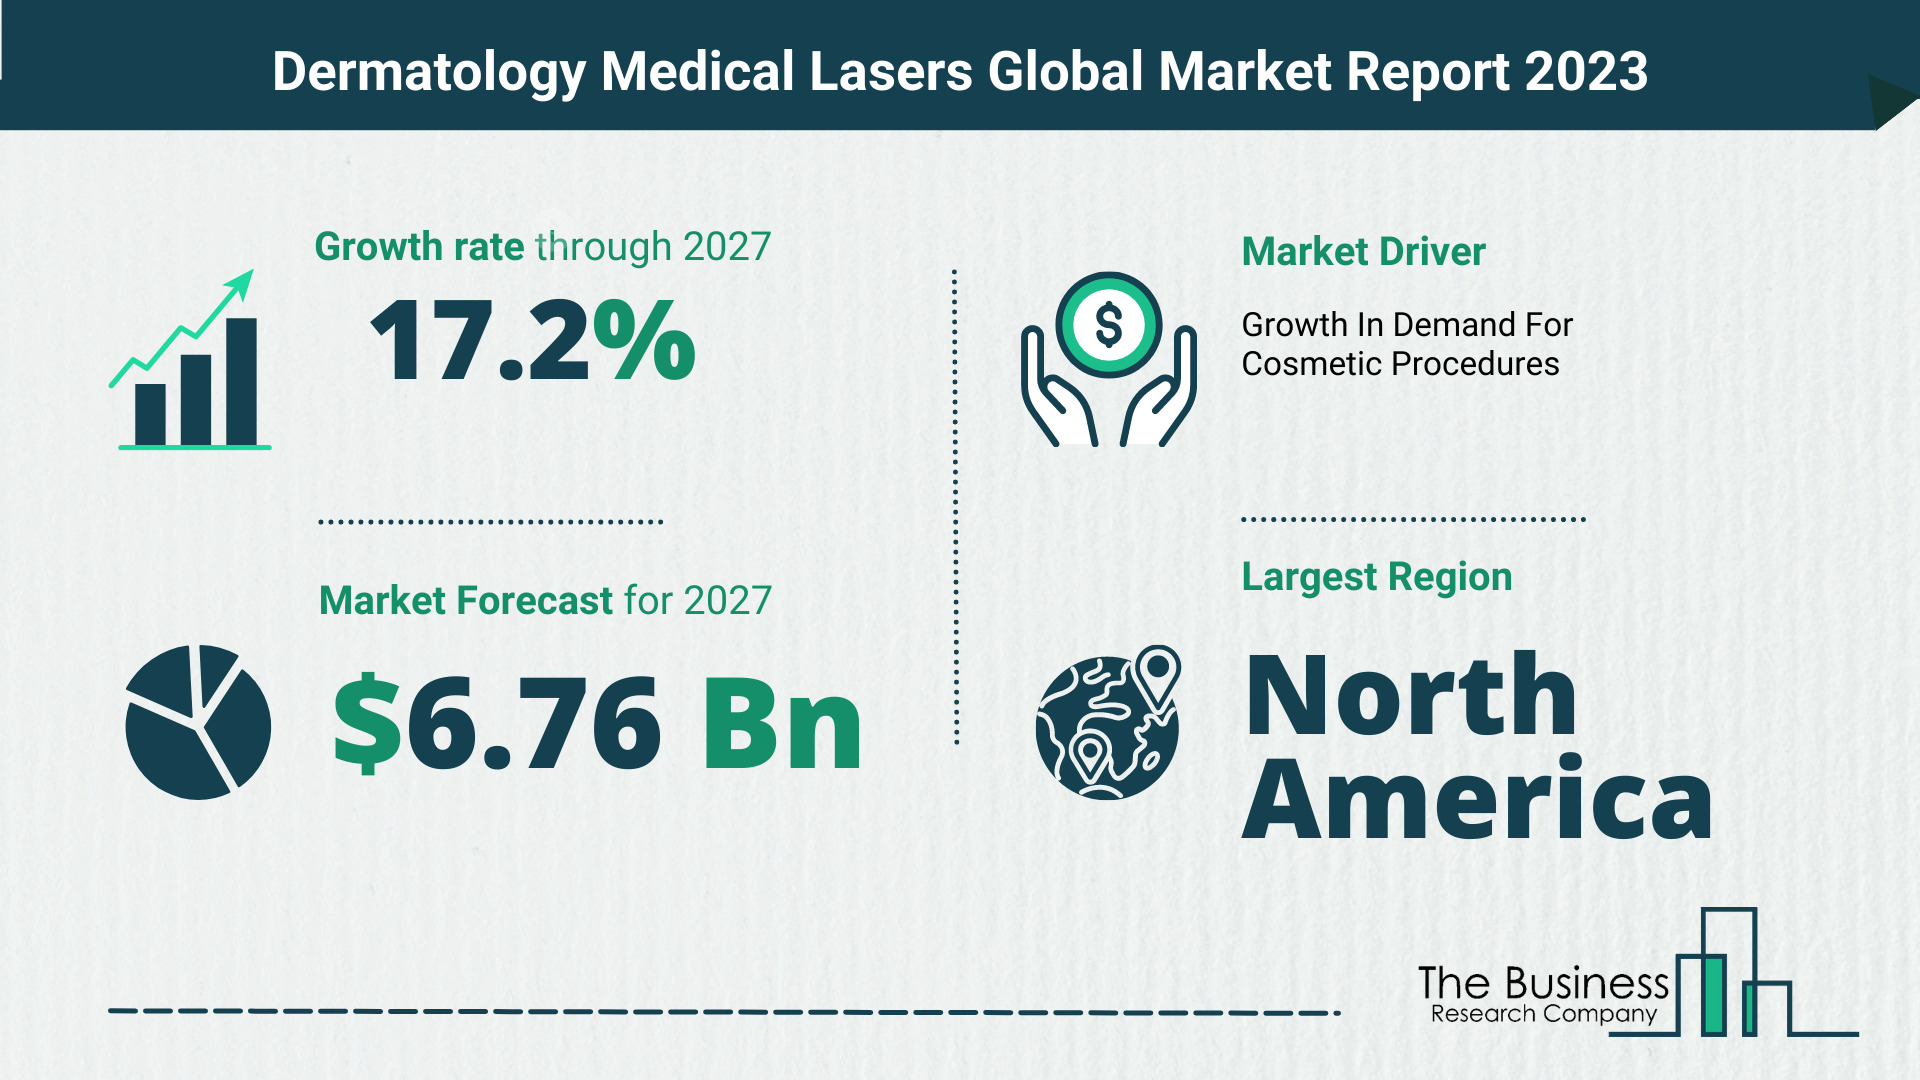 Global Dermatology Medical Lasers Market